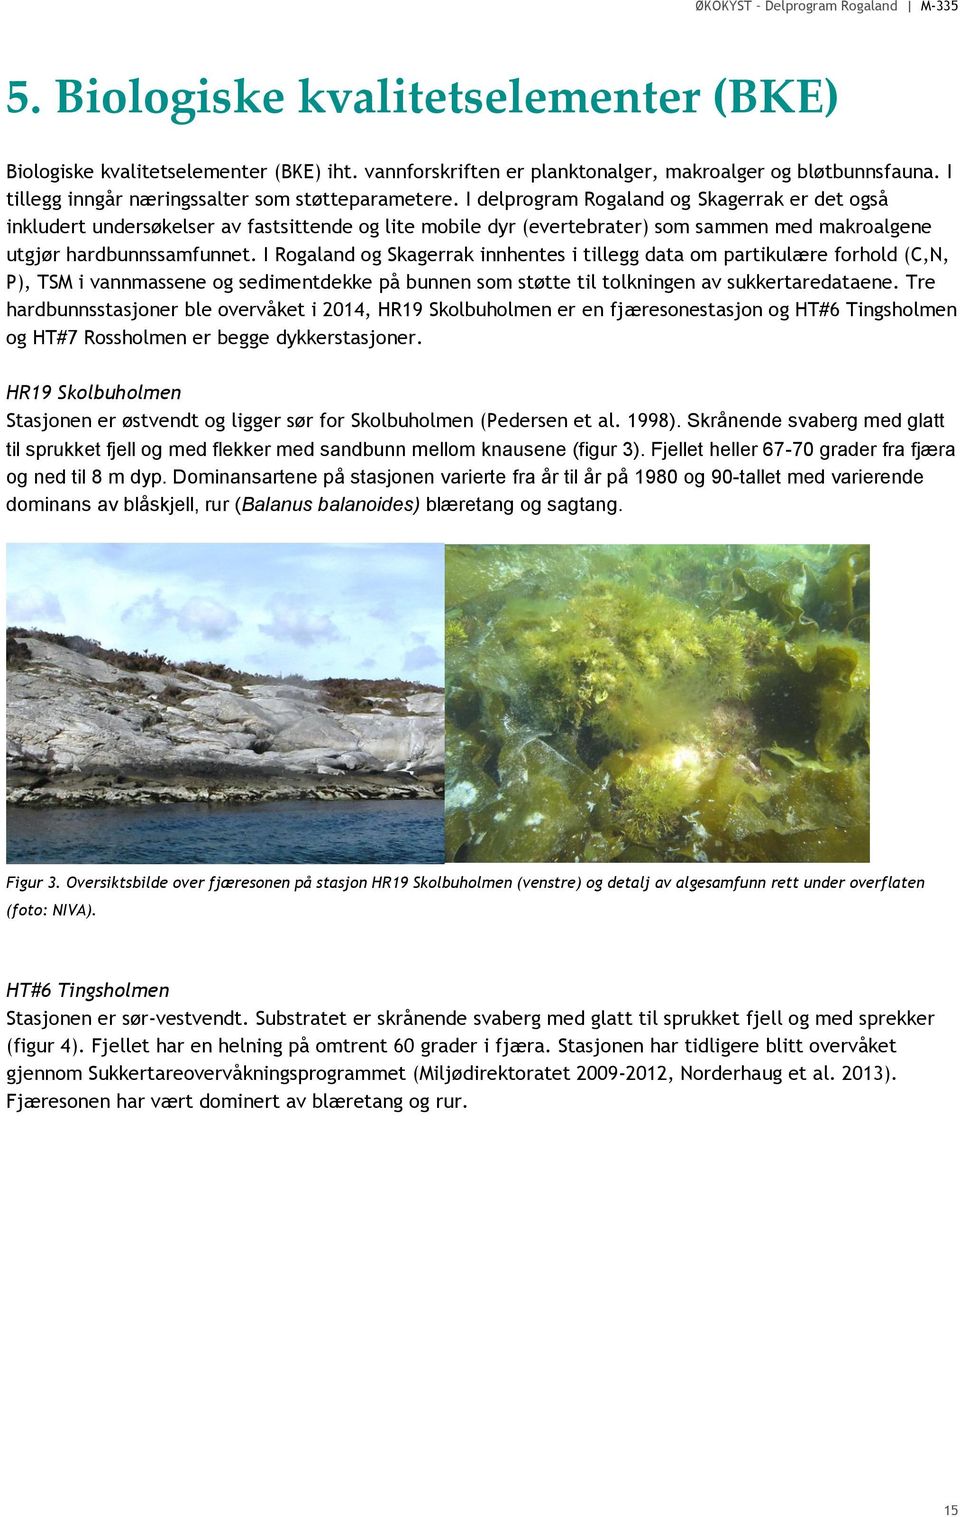 I Rogaland og Skagerrak innhentes i tillegg data om partikulære forhold (C,N, P), TSM i vannmassene og sedimentdekke på bunnen som støtte til tolkningen av sukkertaredataene.